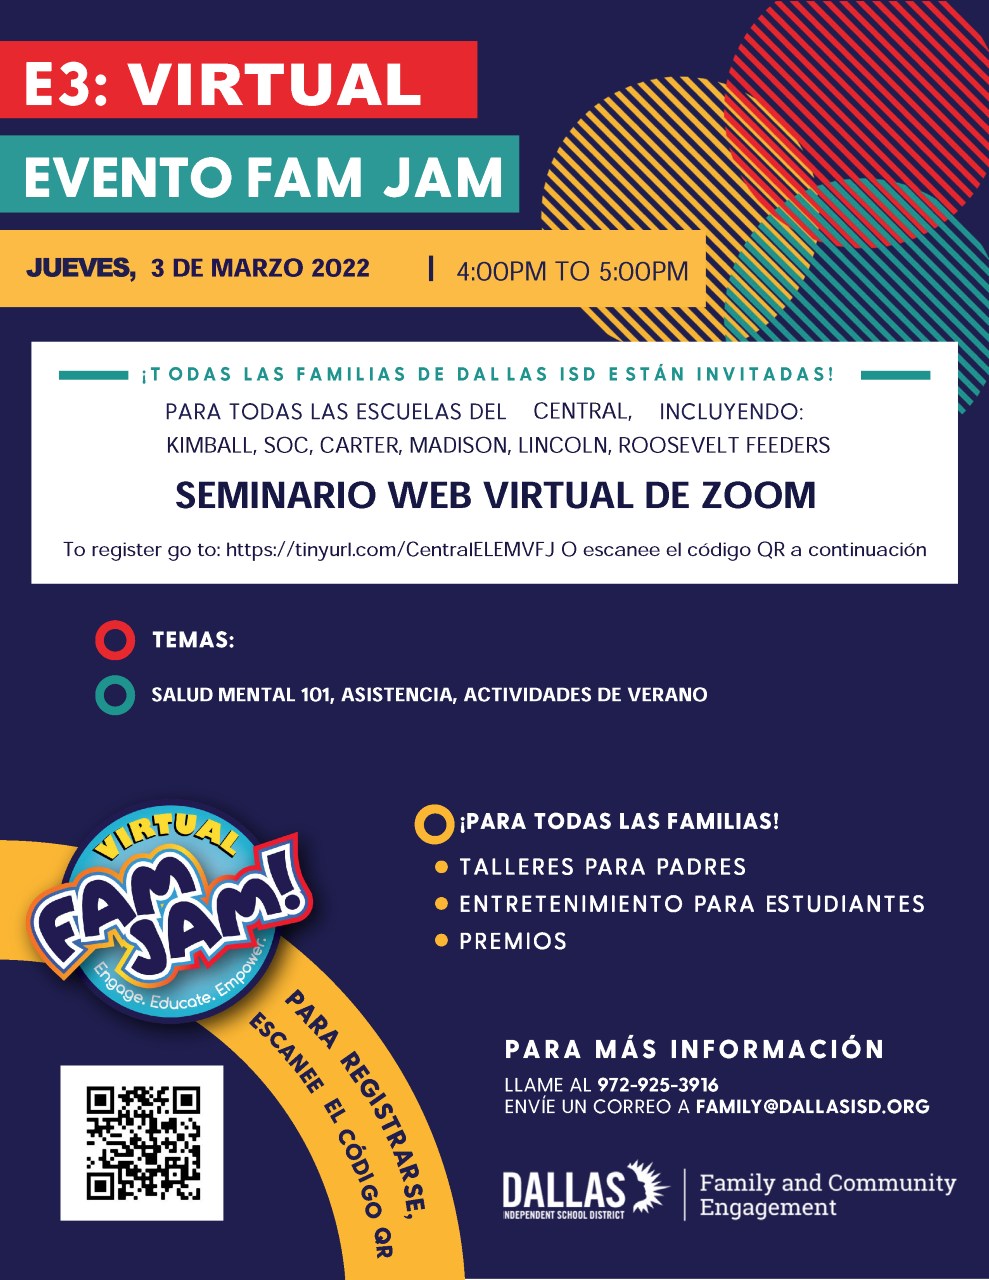 E3 VIRTUAL EVENTO FAM JAM 